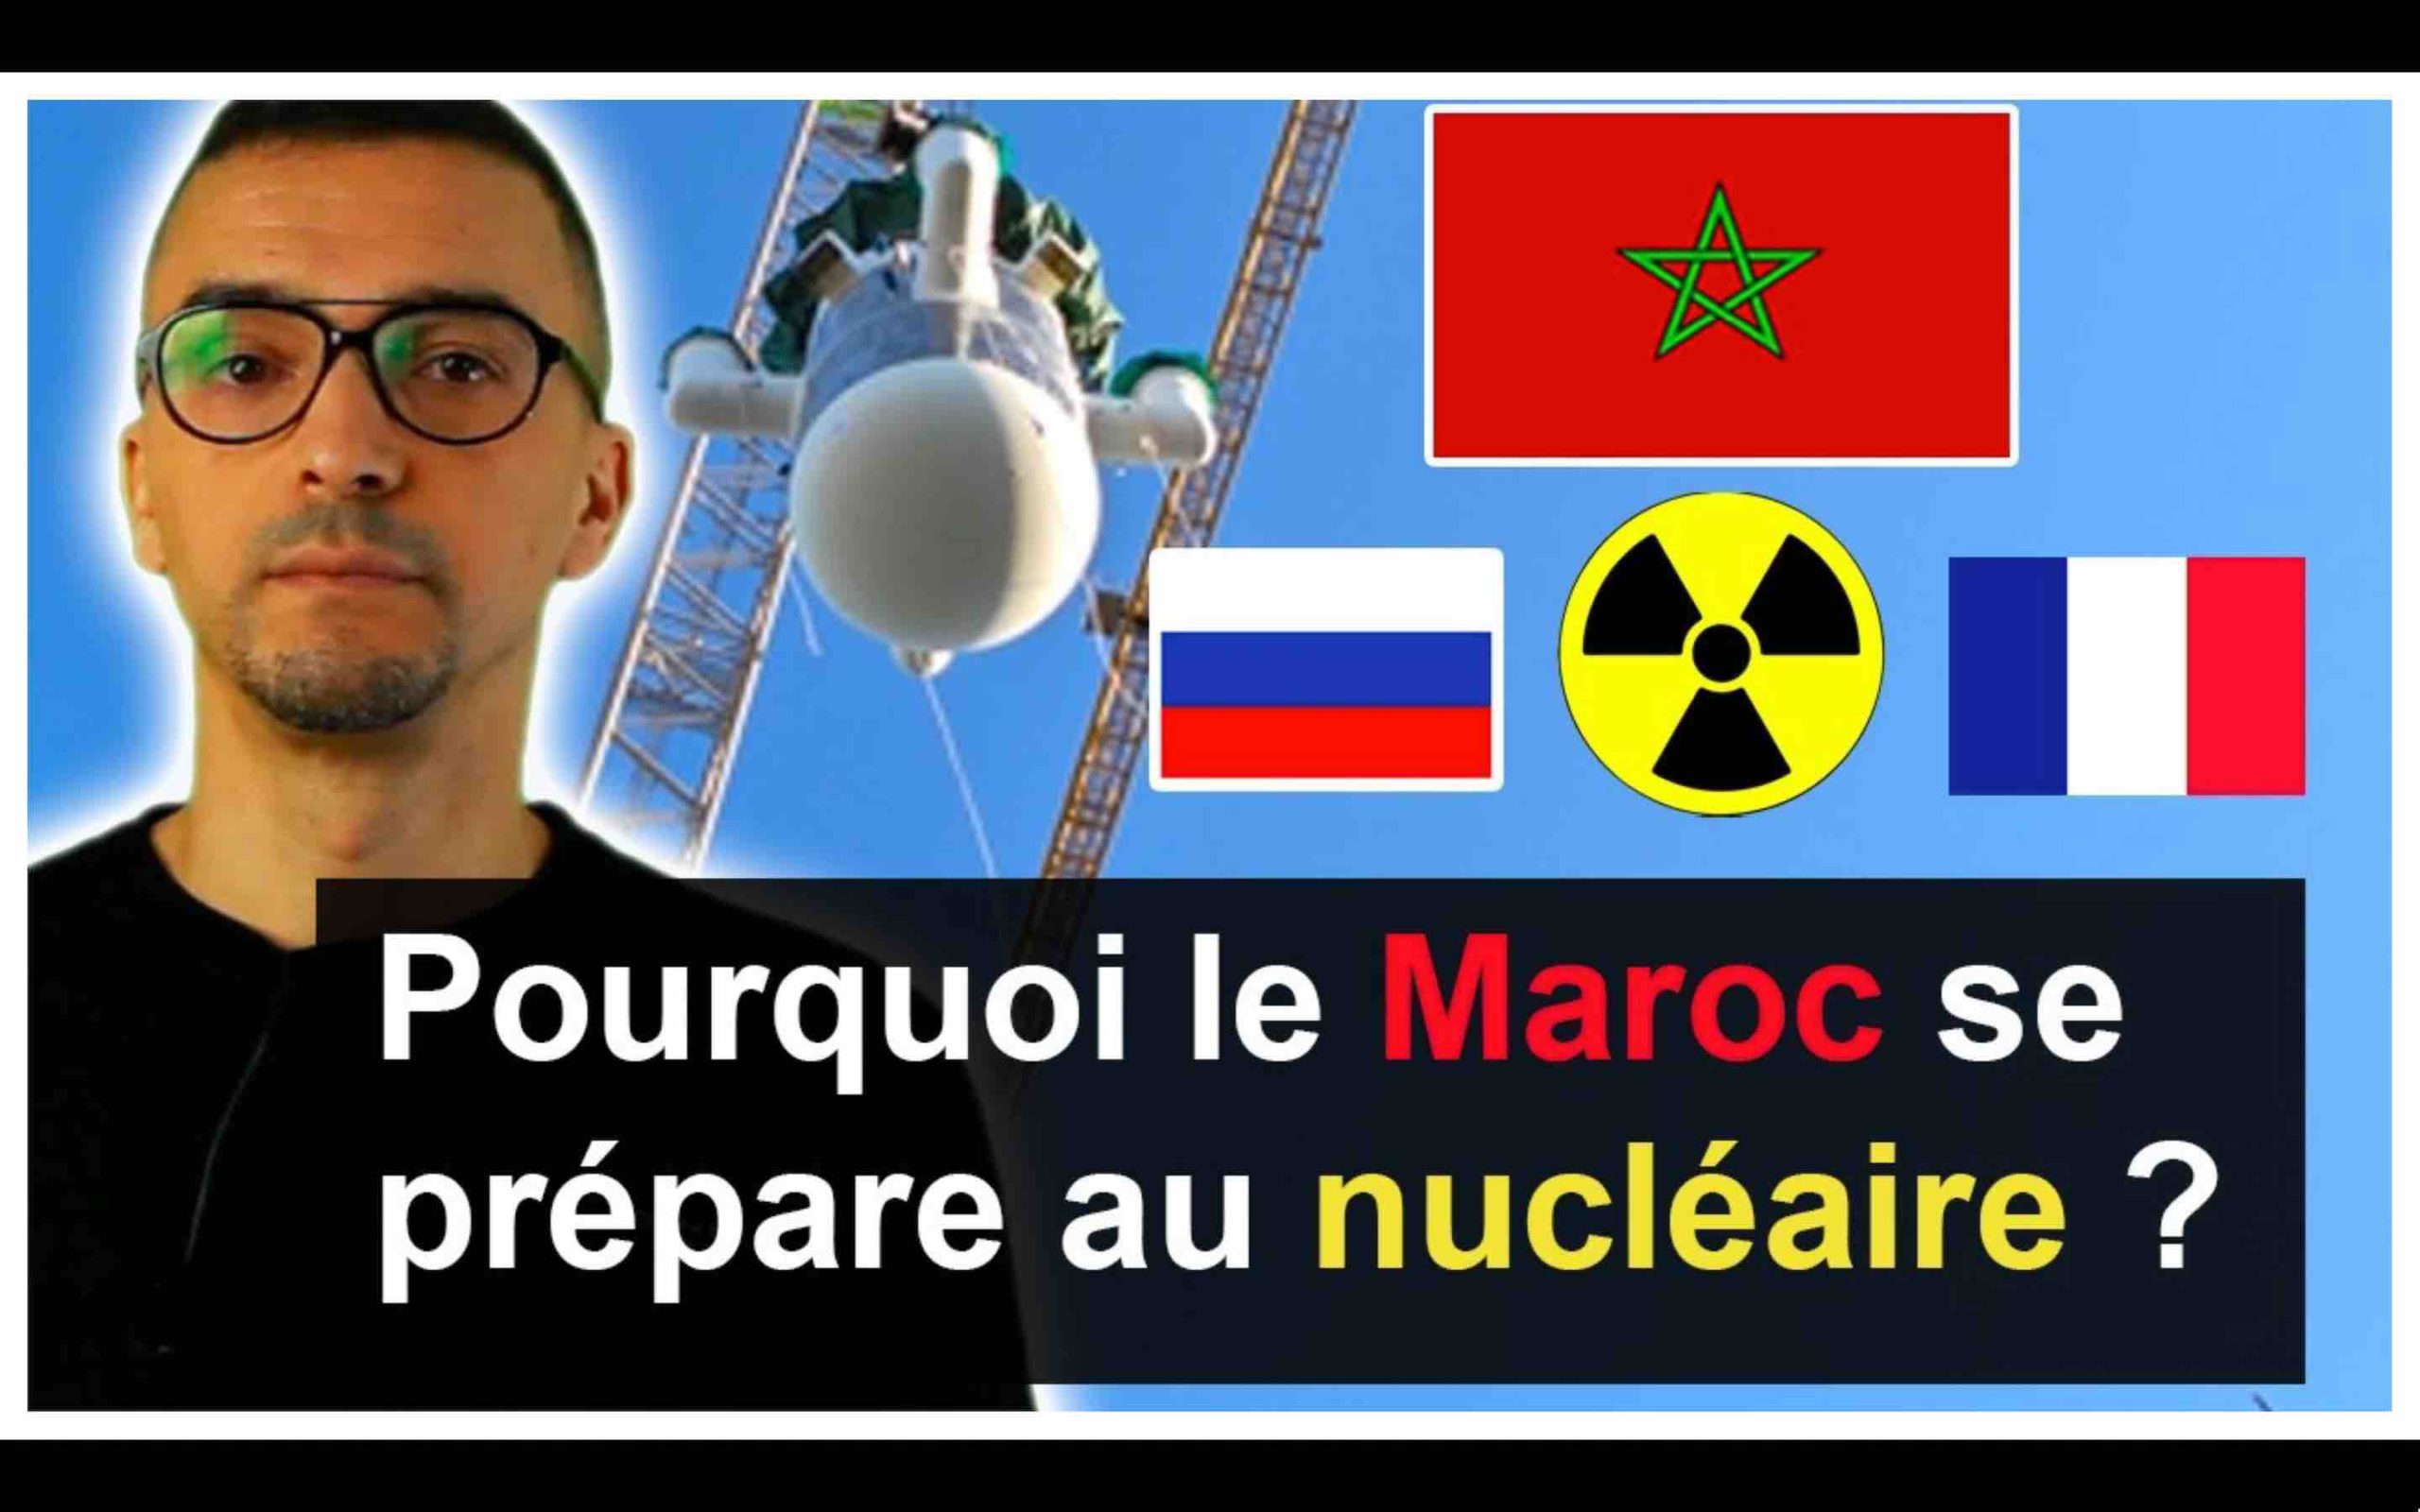 Pourquoi le Maroc se prépare au nucléaire